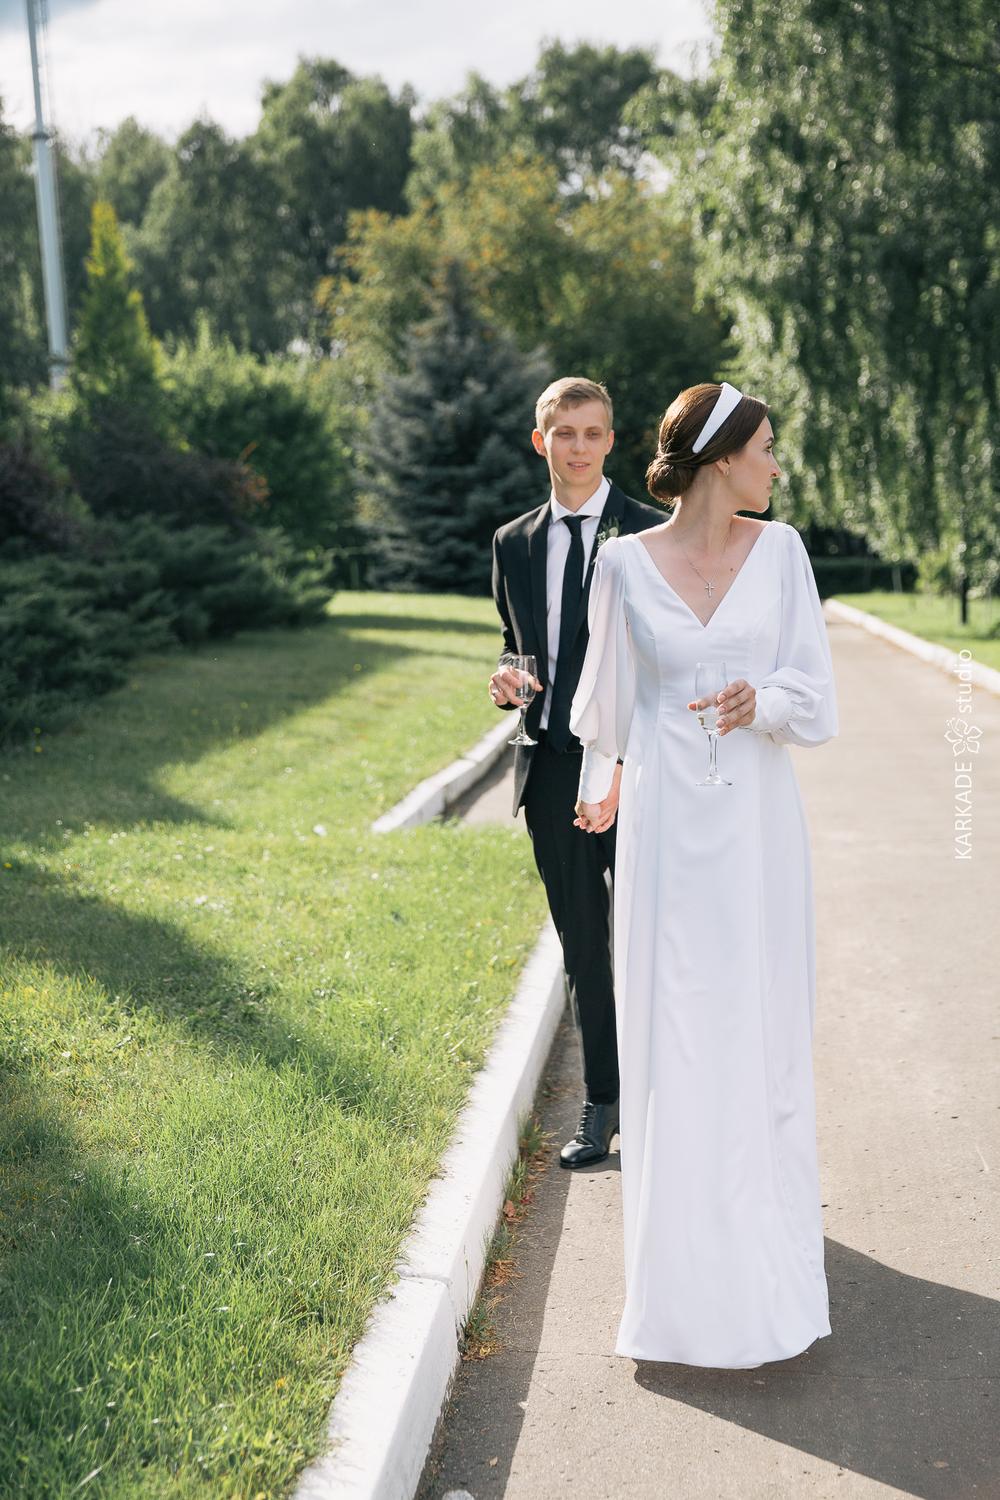 Anastasia & Ivan in Russia